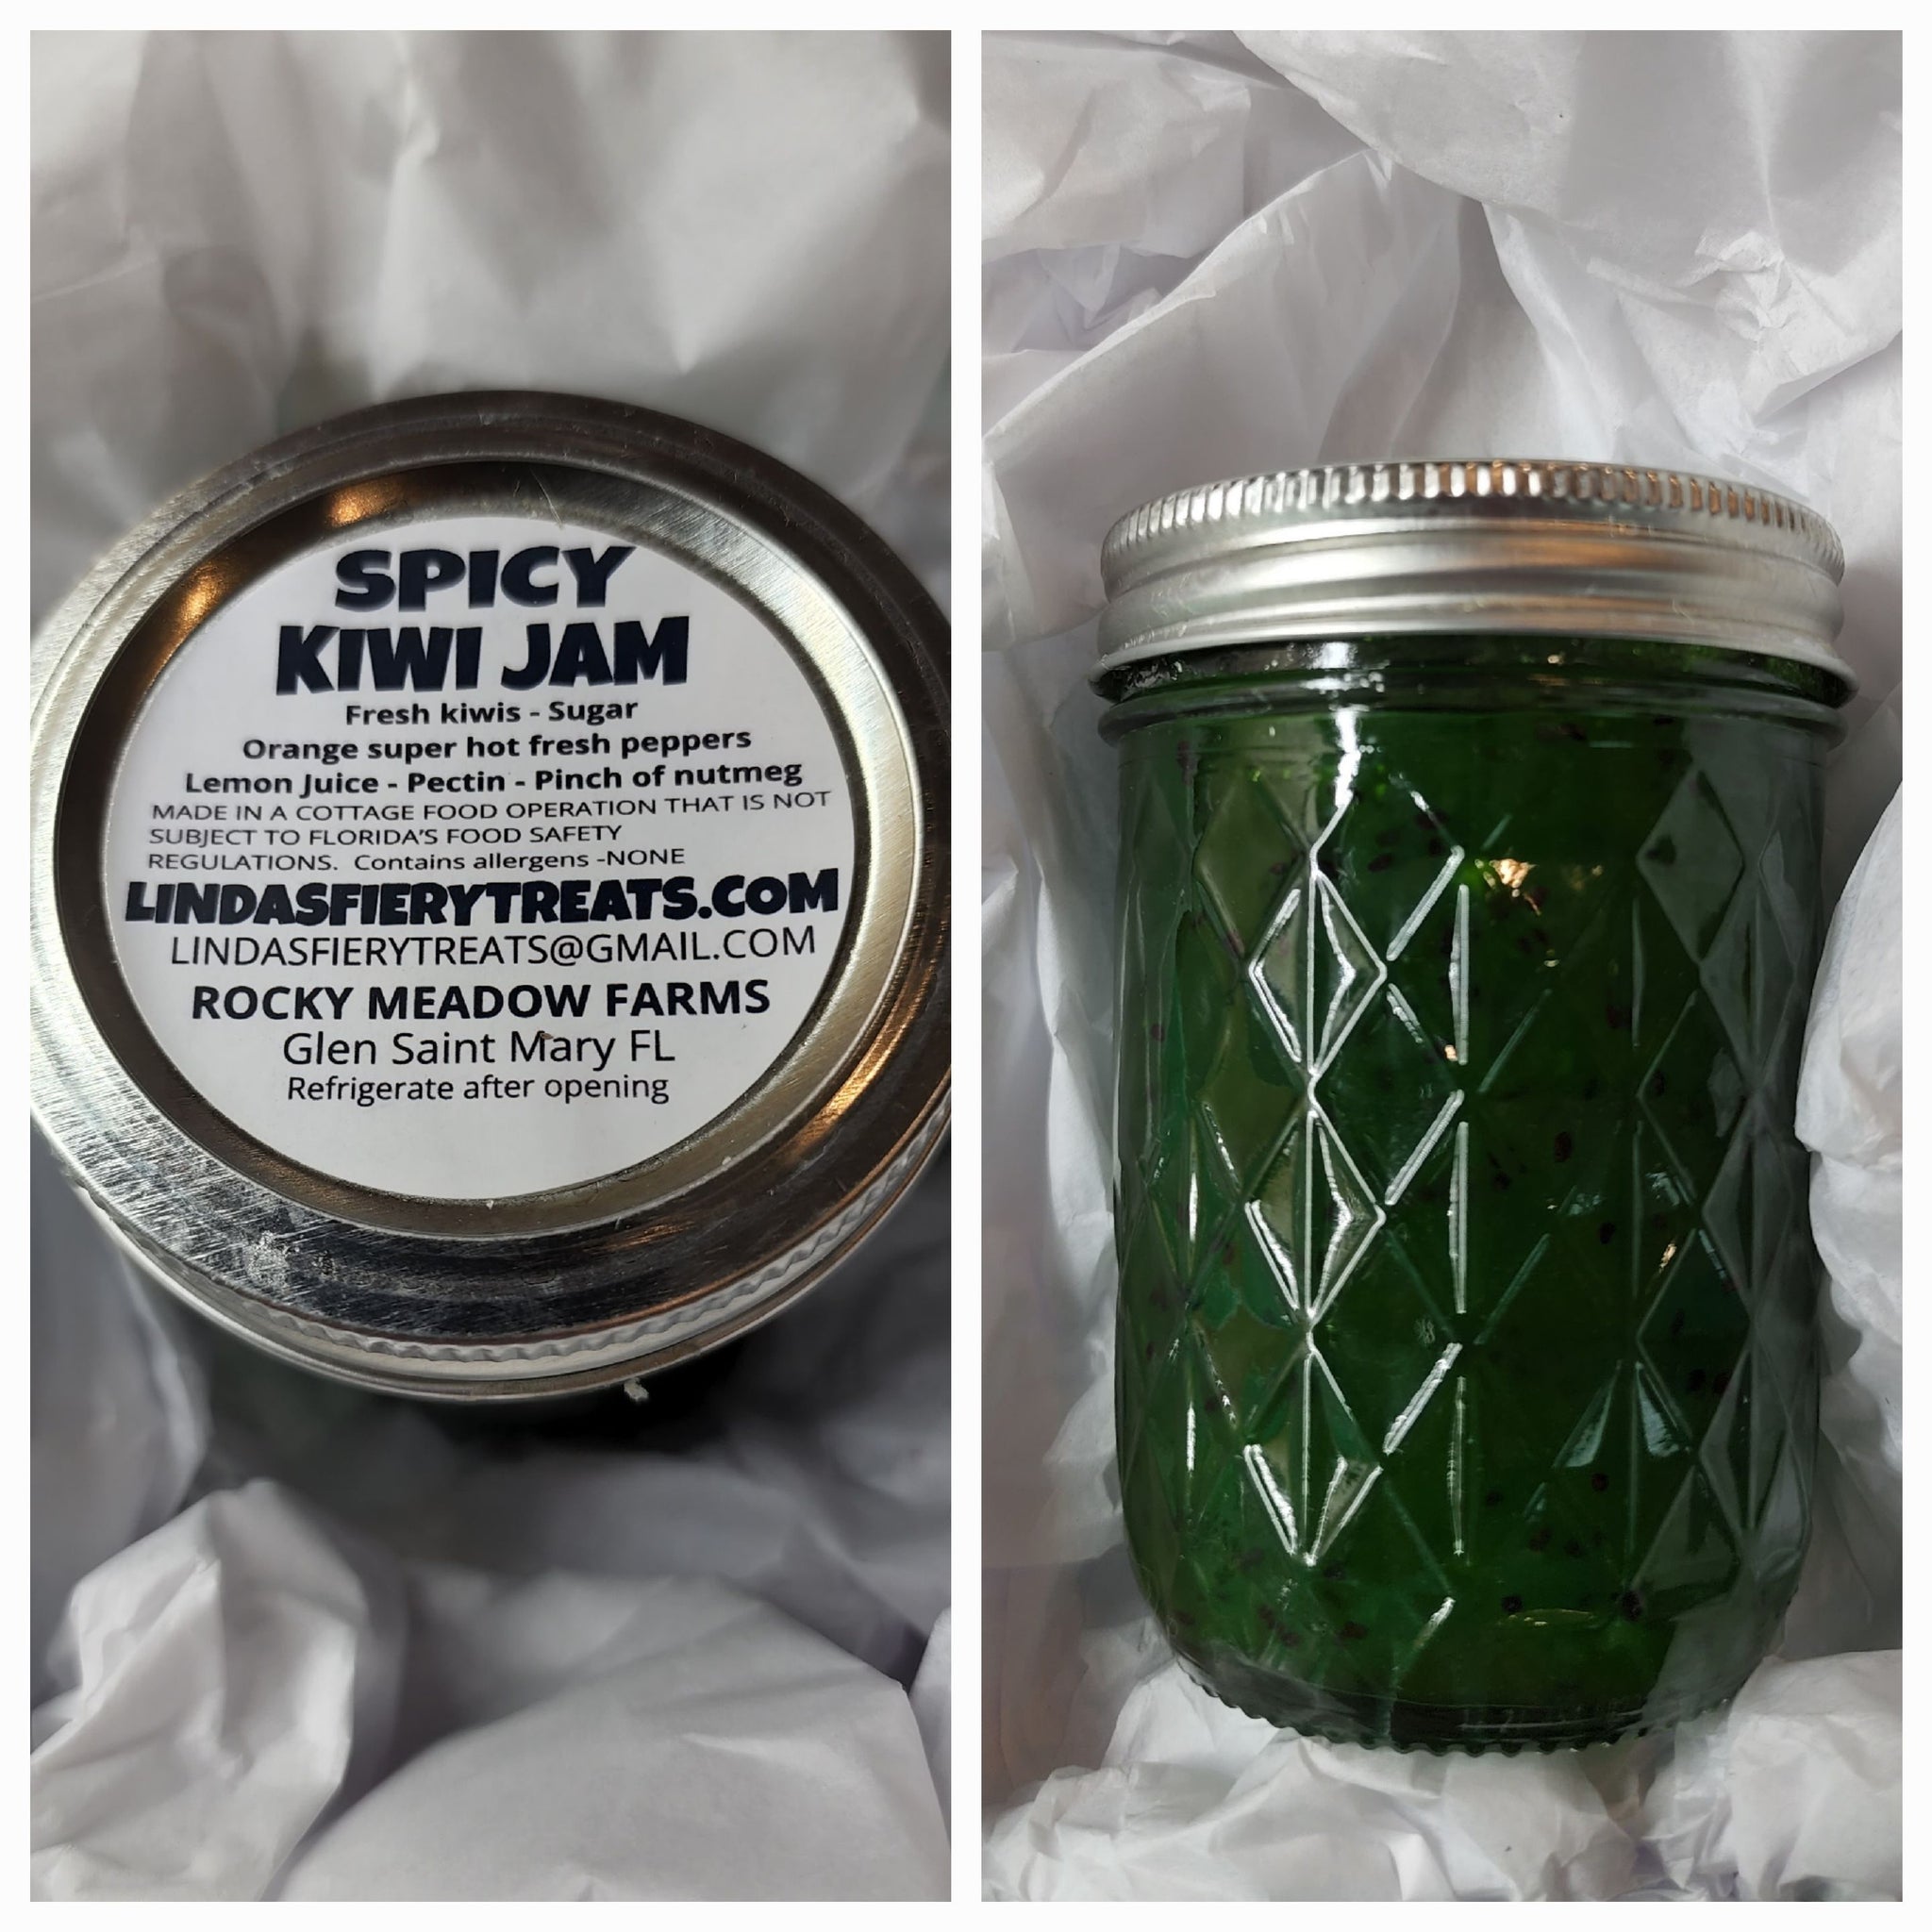 JAM - Spicy kiwi Jam